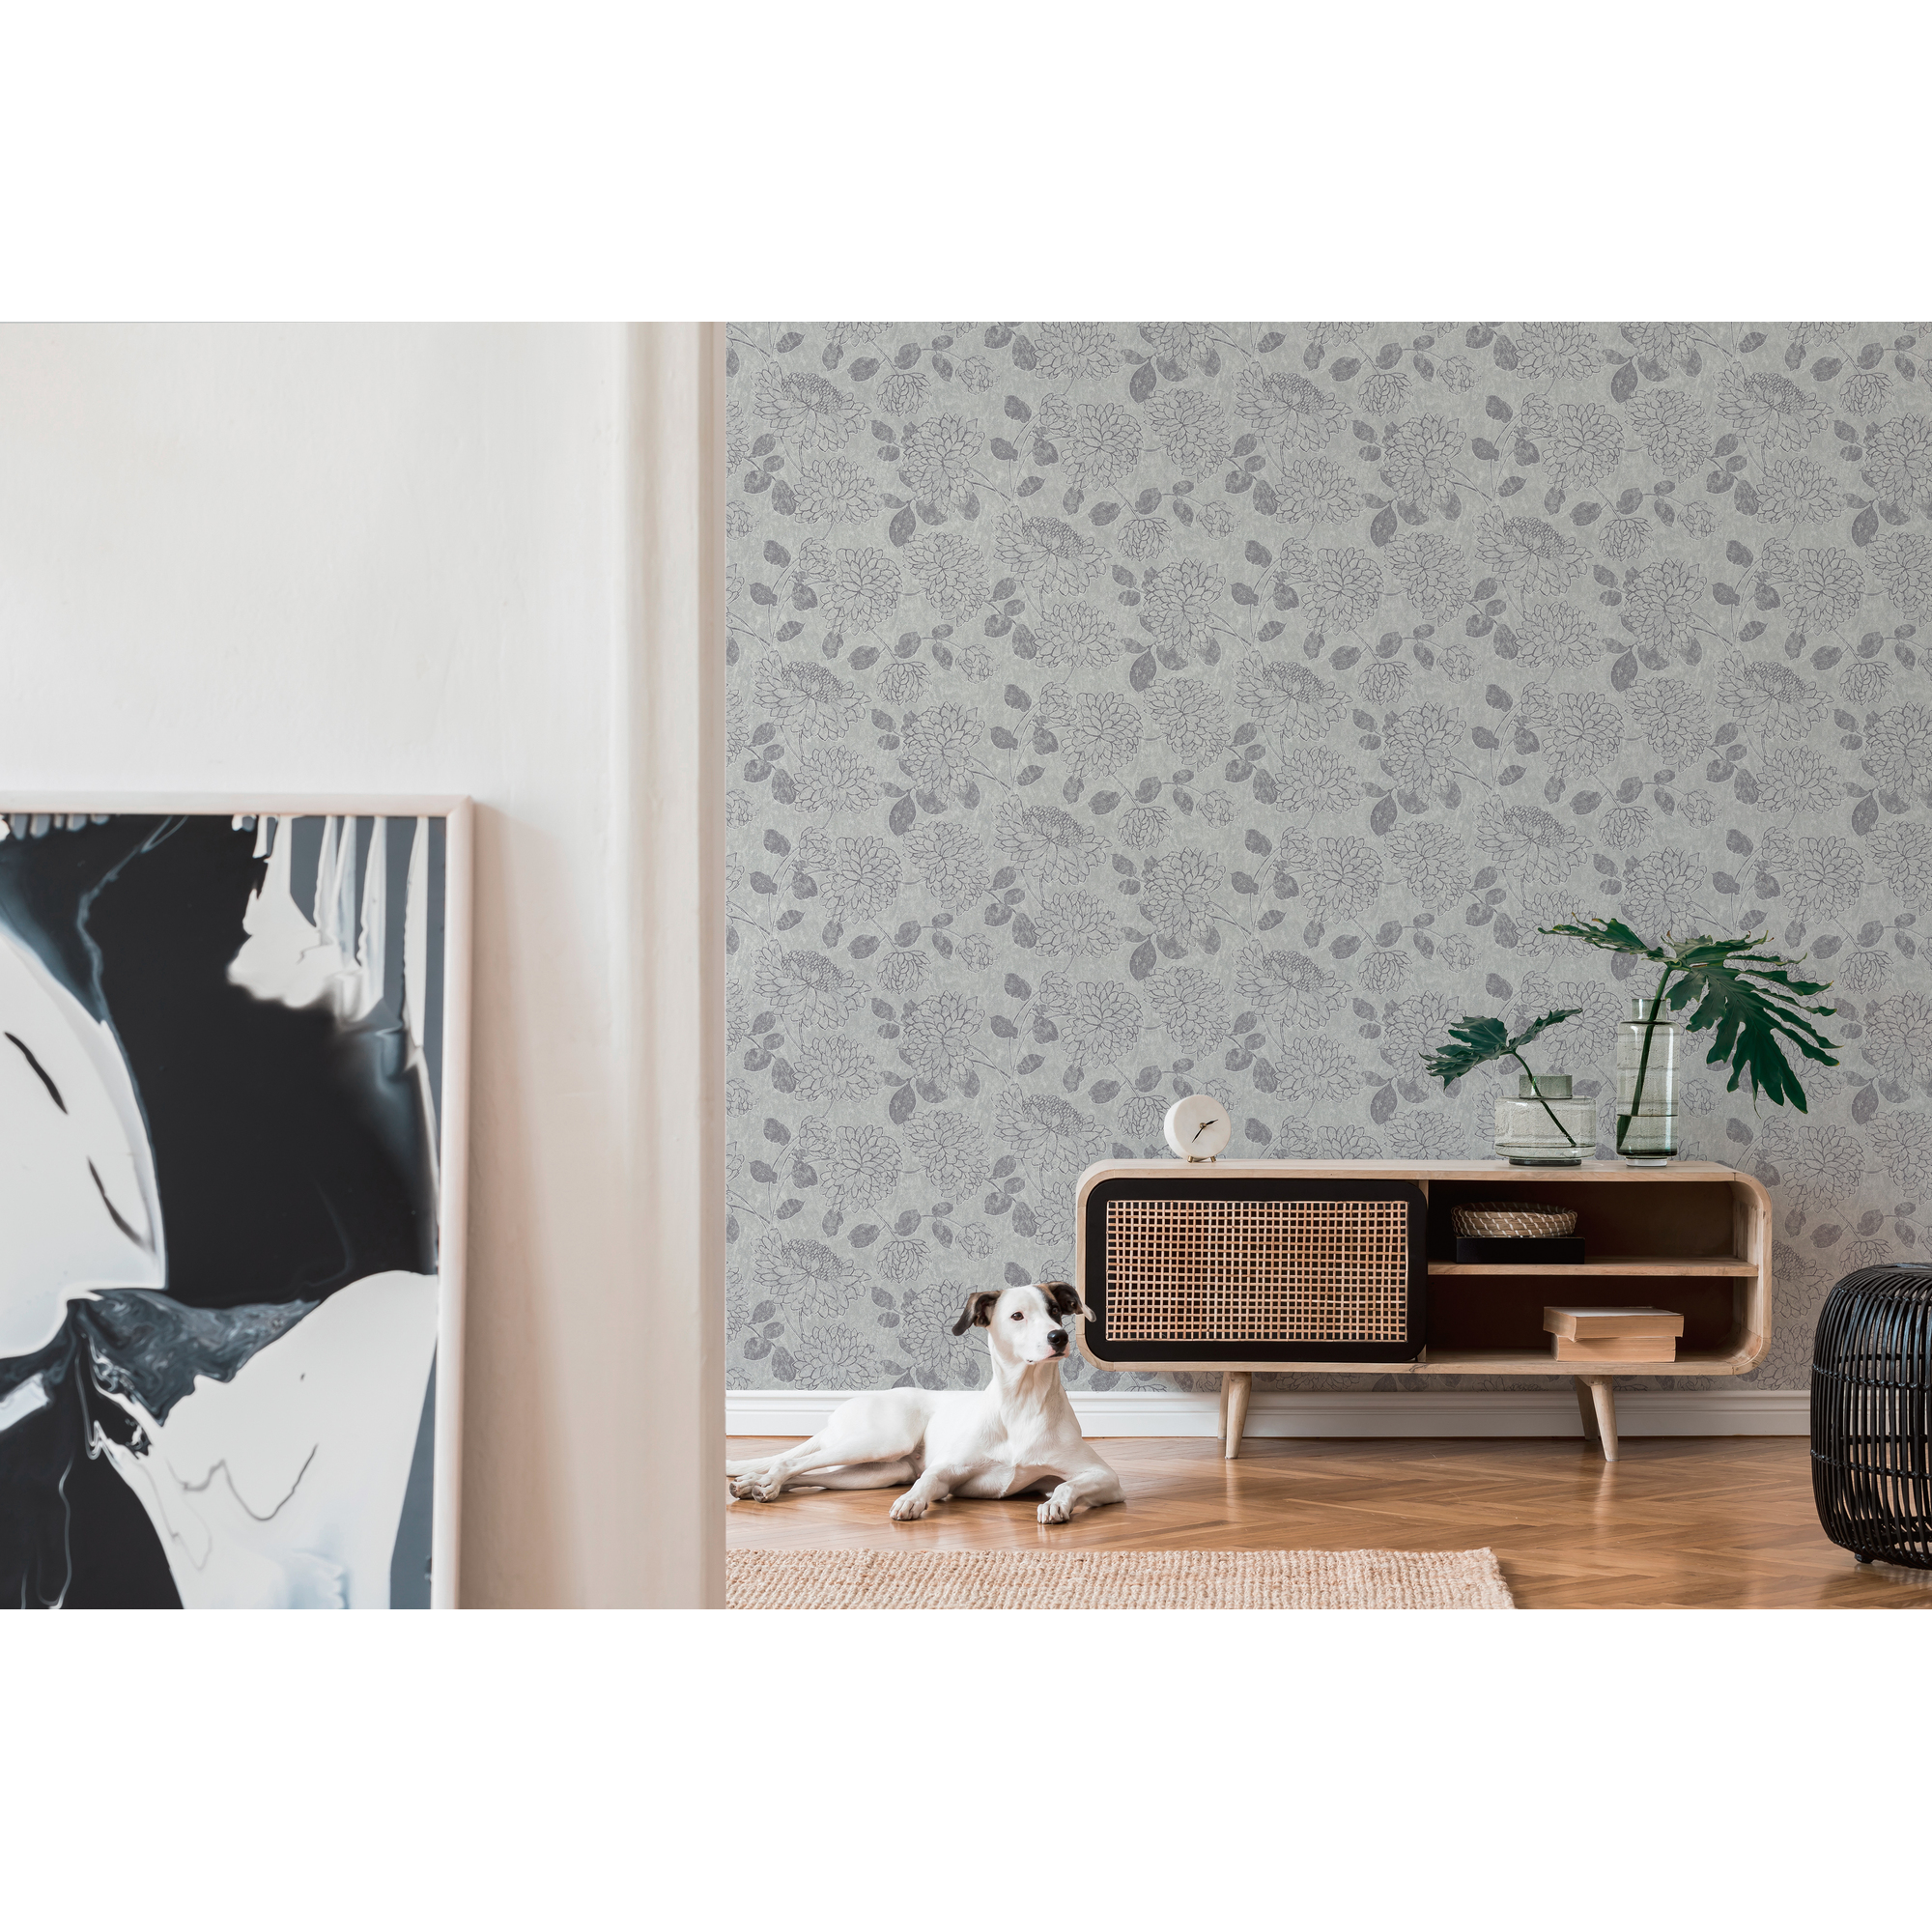 Vliestapete 'Attractive 2' mit Blumen-Muster glänzend hellgrau/silber 10,05 x 0,53 m + product picture